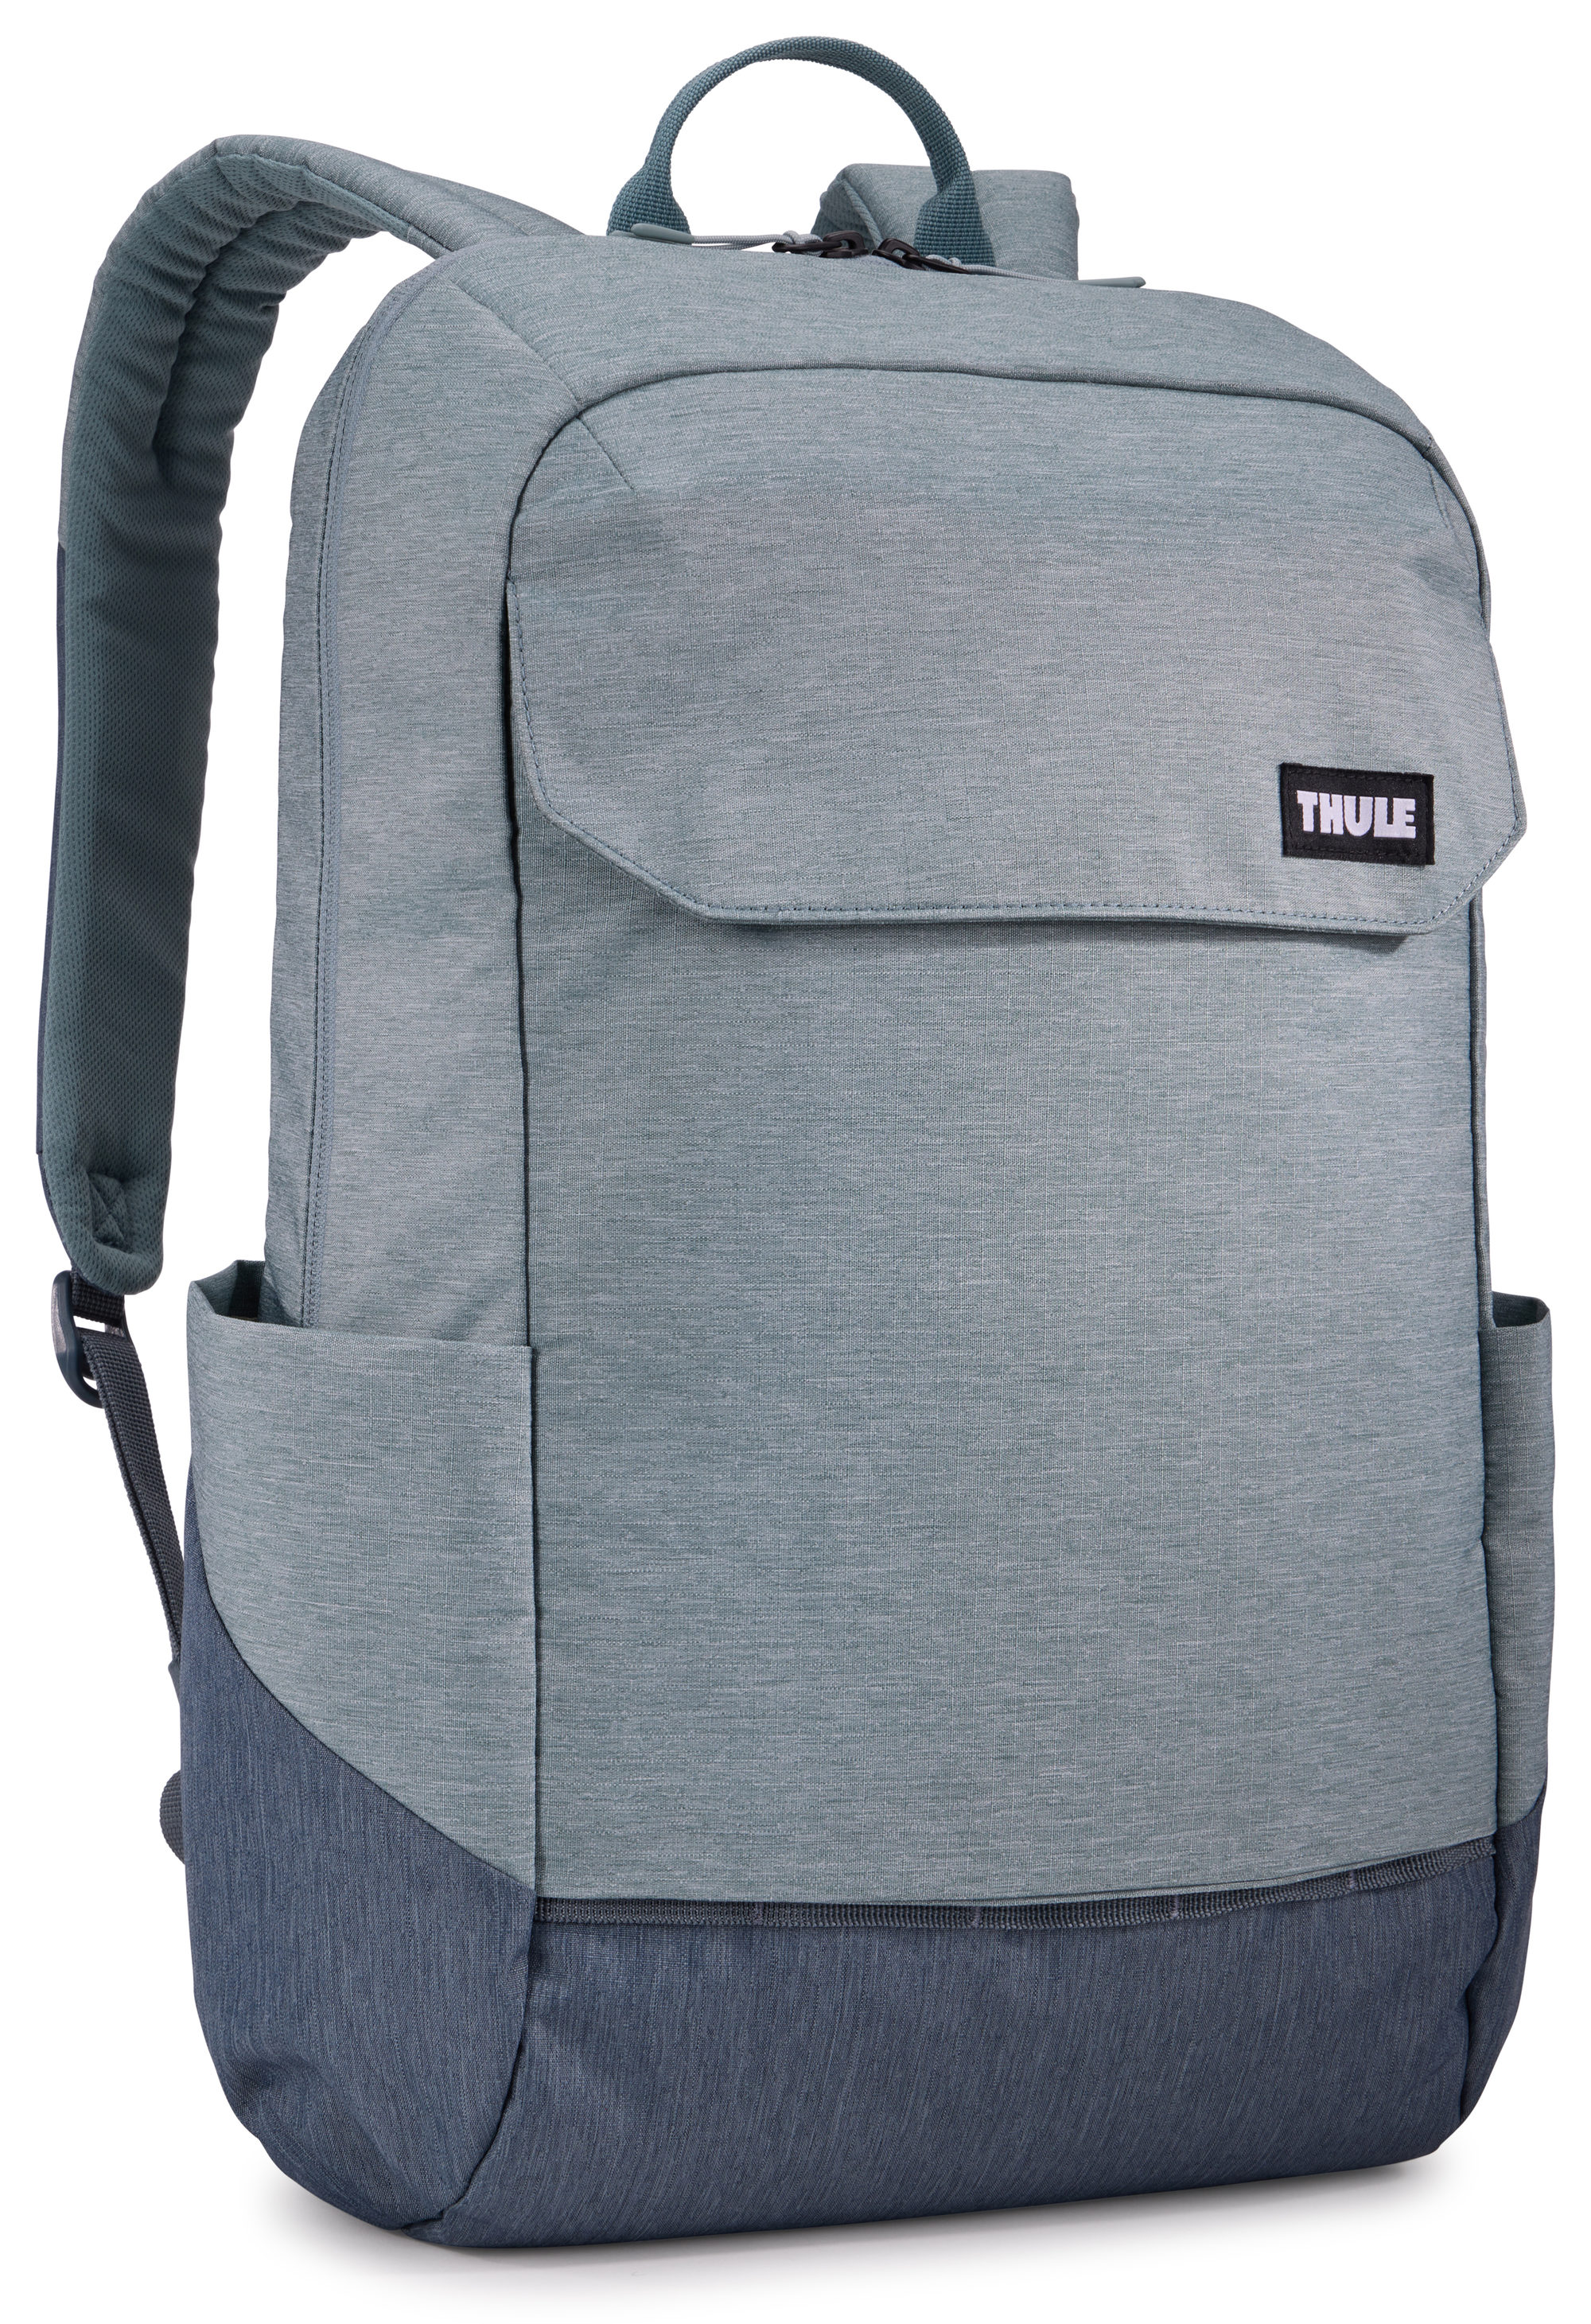 Thule Lithos Backpack 20L  in Grau (20 Liter), Rucksack / Backpack